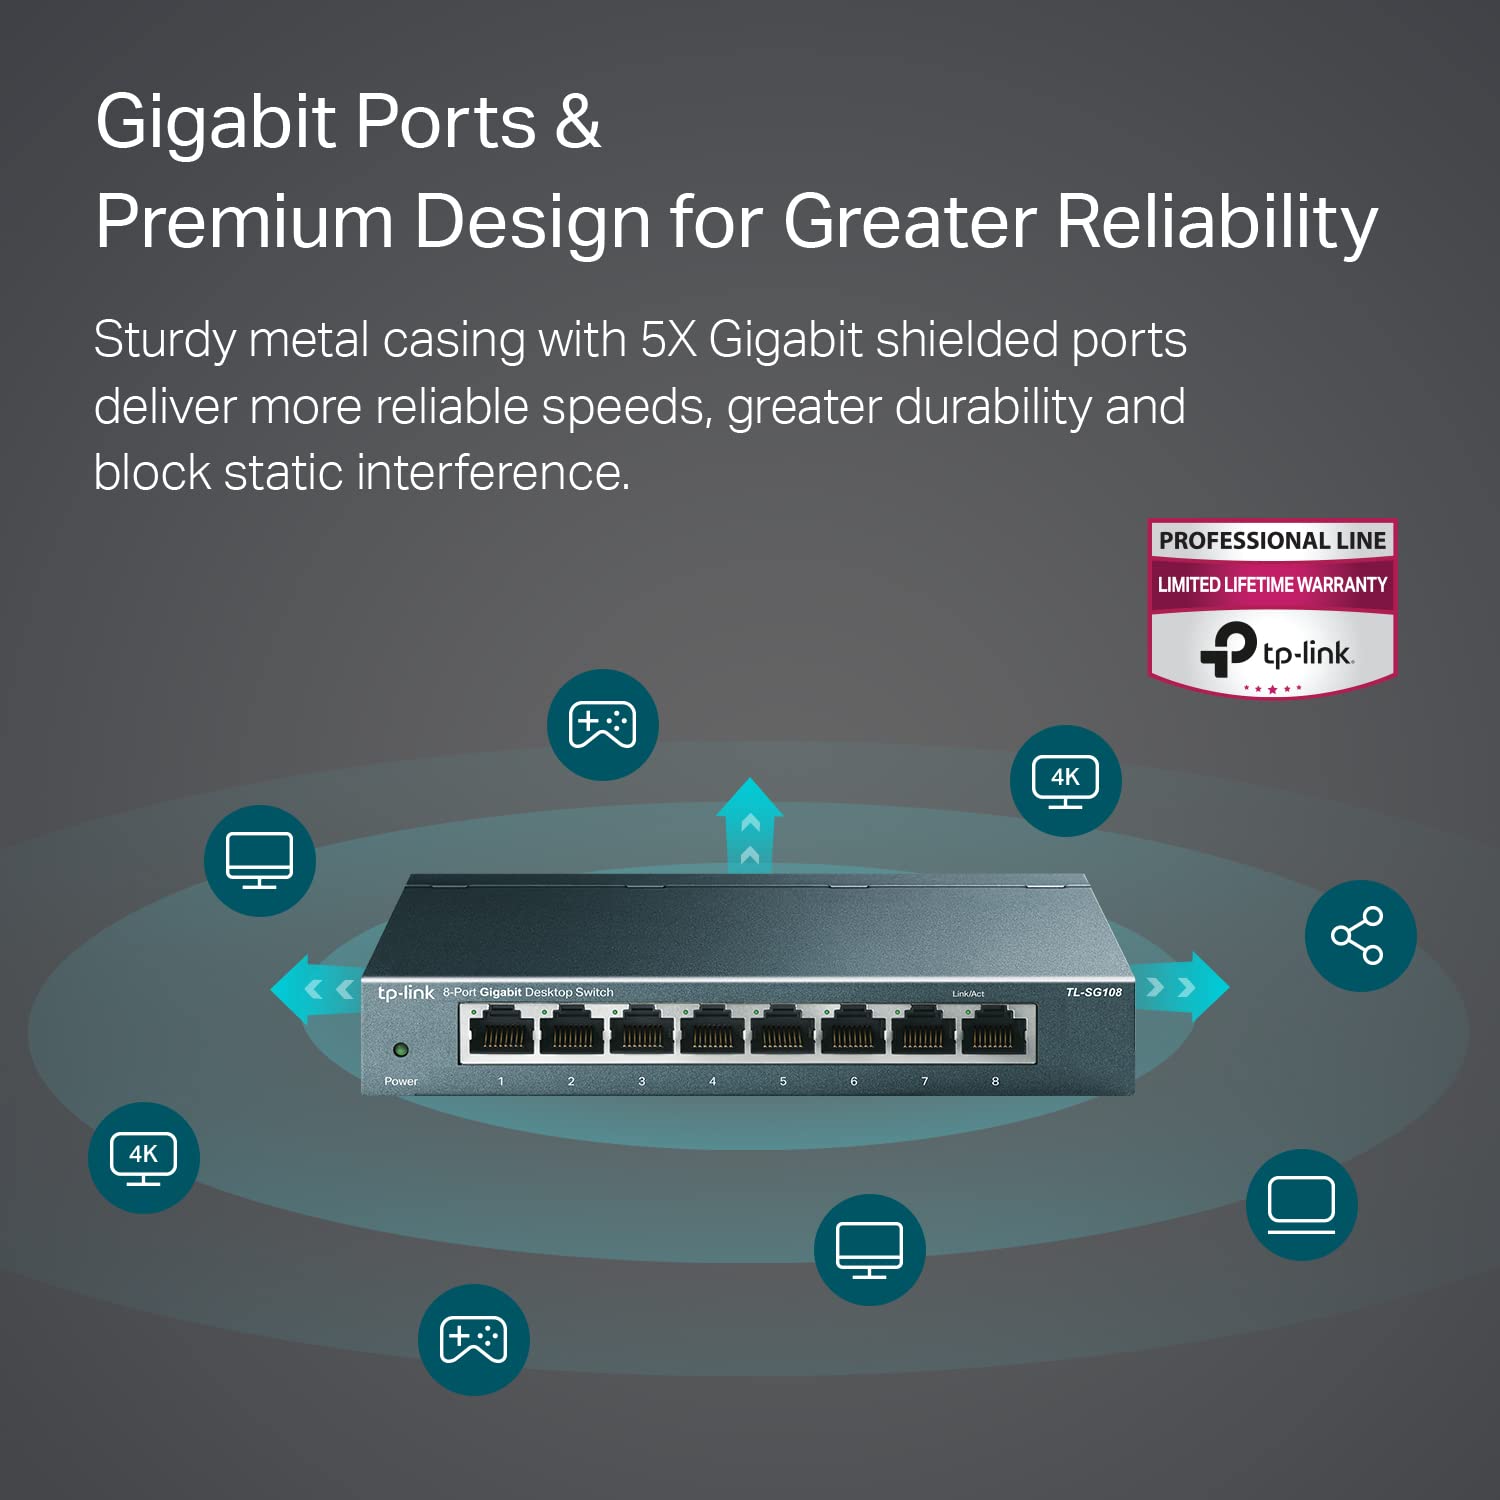 TP-Link 8-Port Gigabit Ethernet Switch, Desktop/Wall-Mount, Steel Case(TL-SG108)